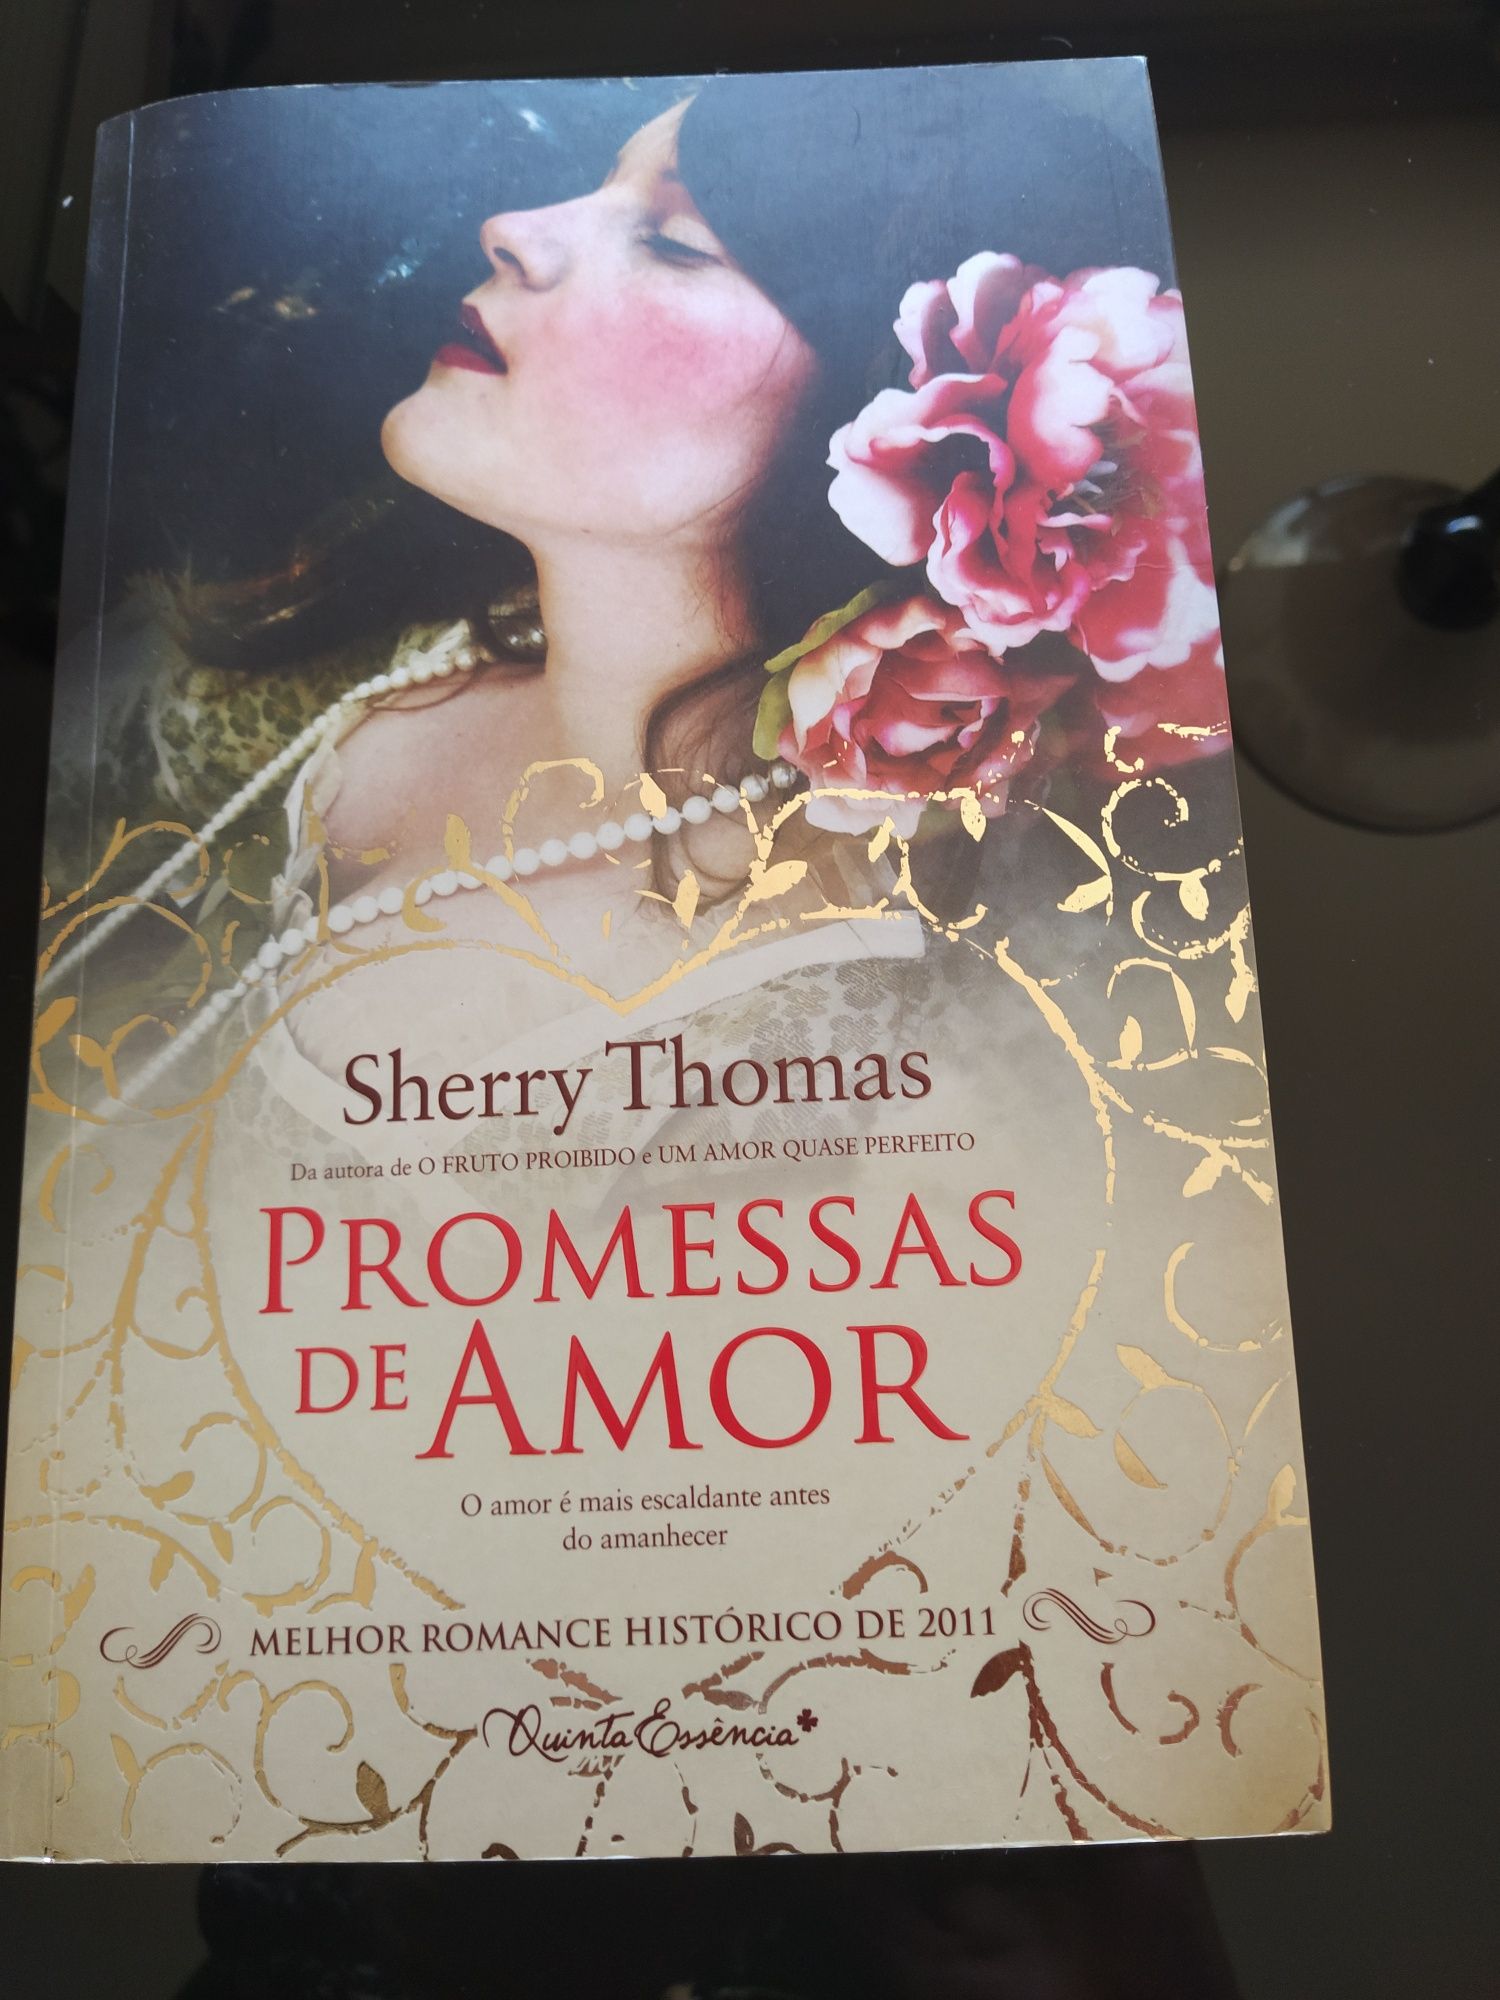 Livro de Sherry Thomas